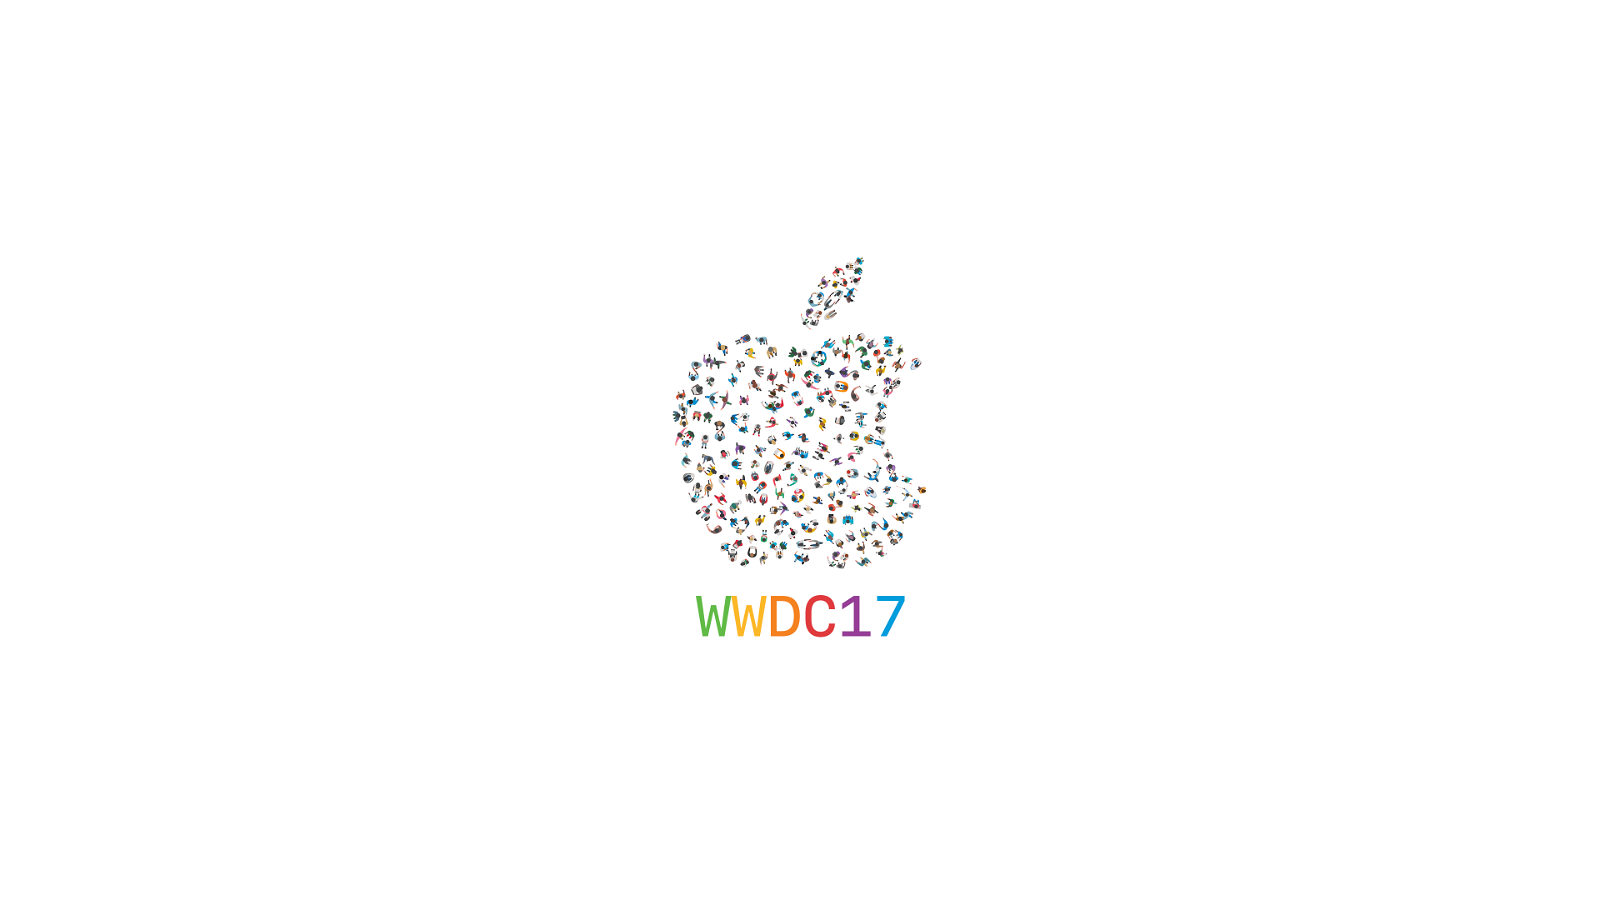 WWDC PC 2